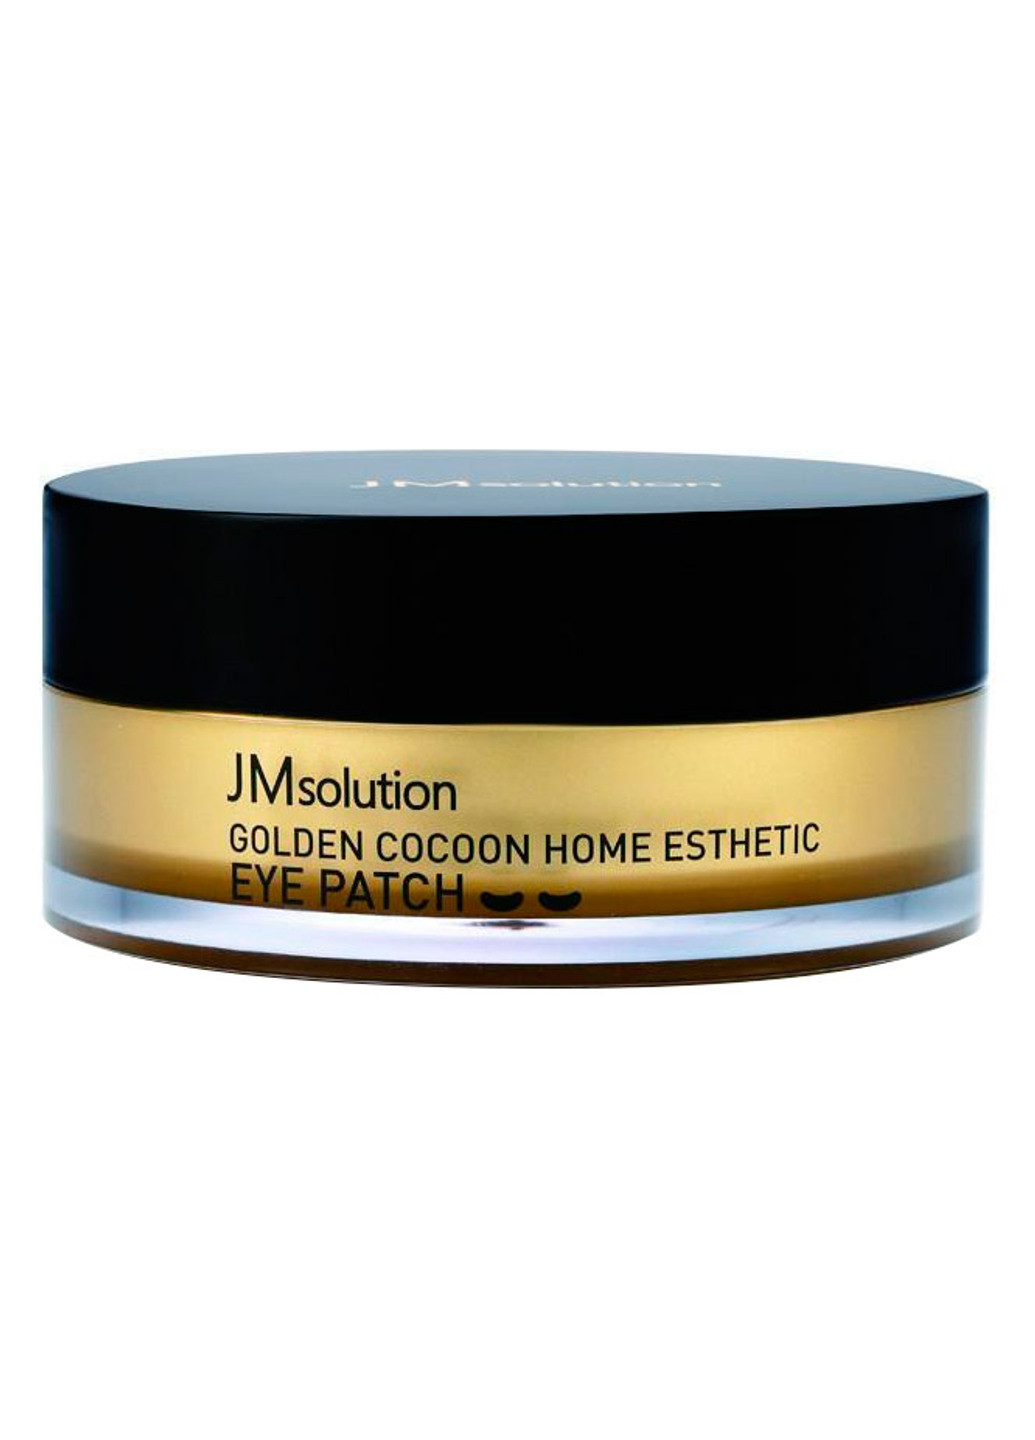 Гидрогелевые омолаживающие патчи с золотом Golden Cocoon Home Esthetic Eye Patch (60 шт.) JMsolution не определен (201783256)